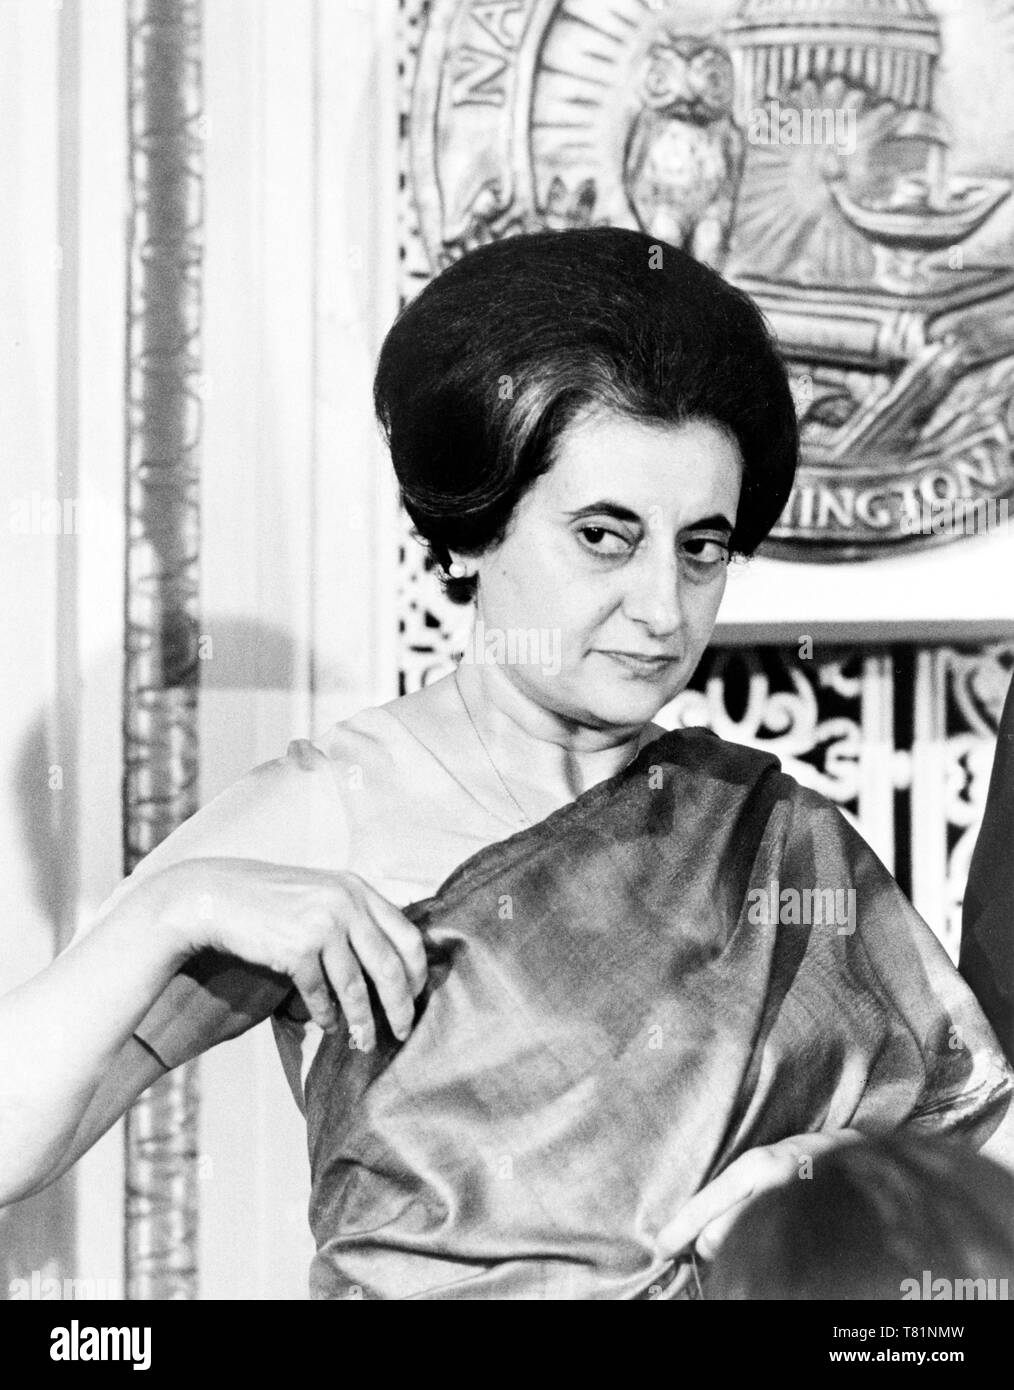 The Case that led to Emergency Indira Gandhi v Raj Narain 1975